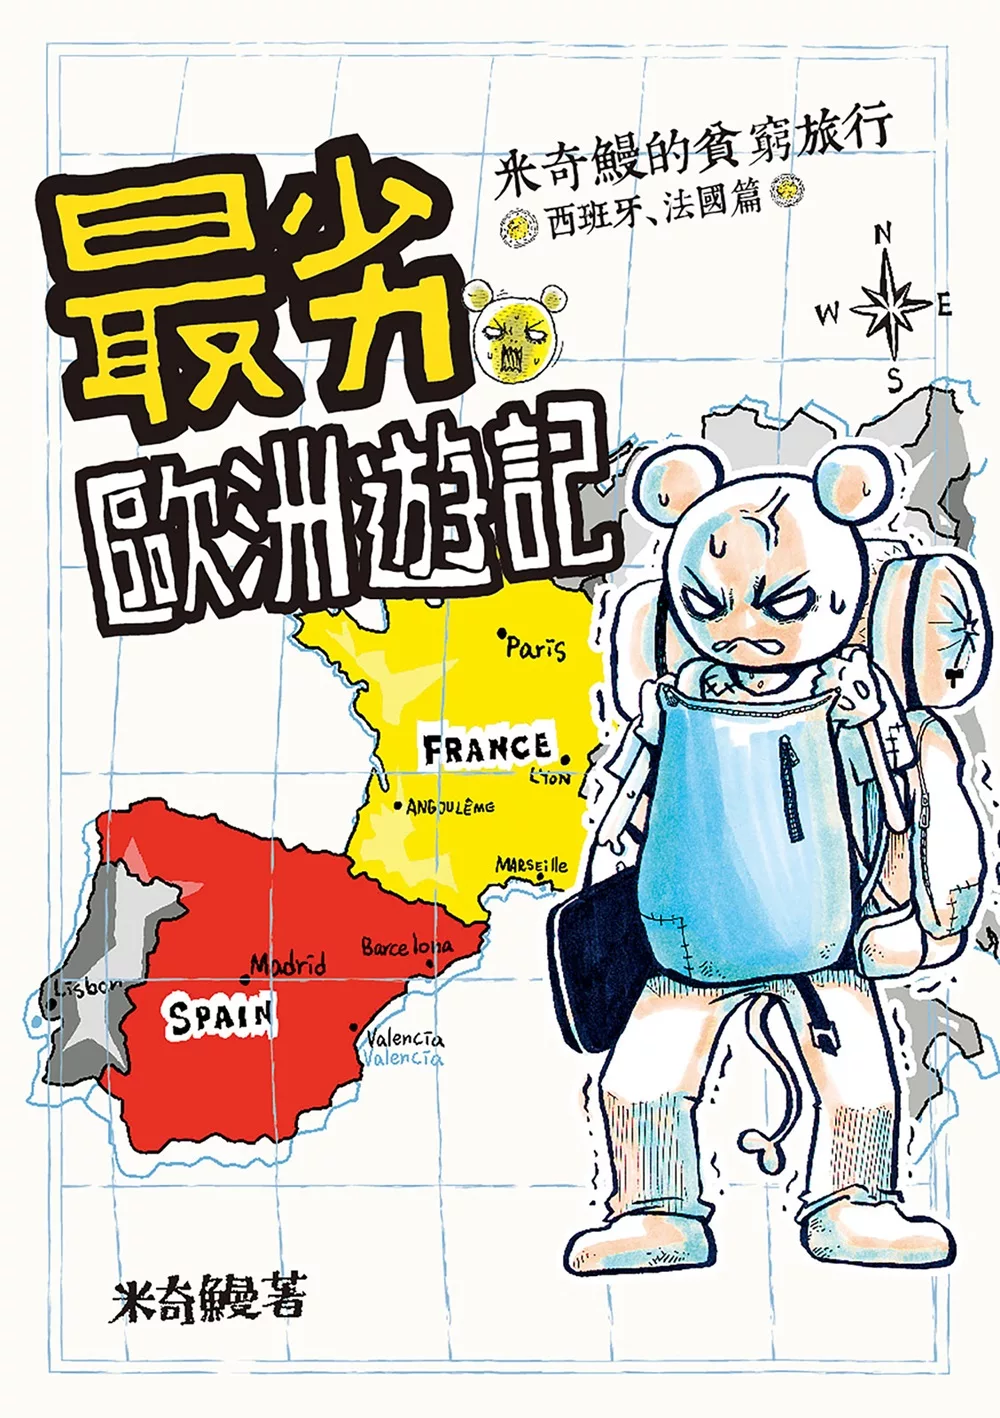 最劣歐洲遊記 米奇鰻的貧窮旅行 西班牙、法國篇 (電子書)